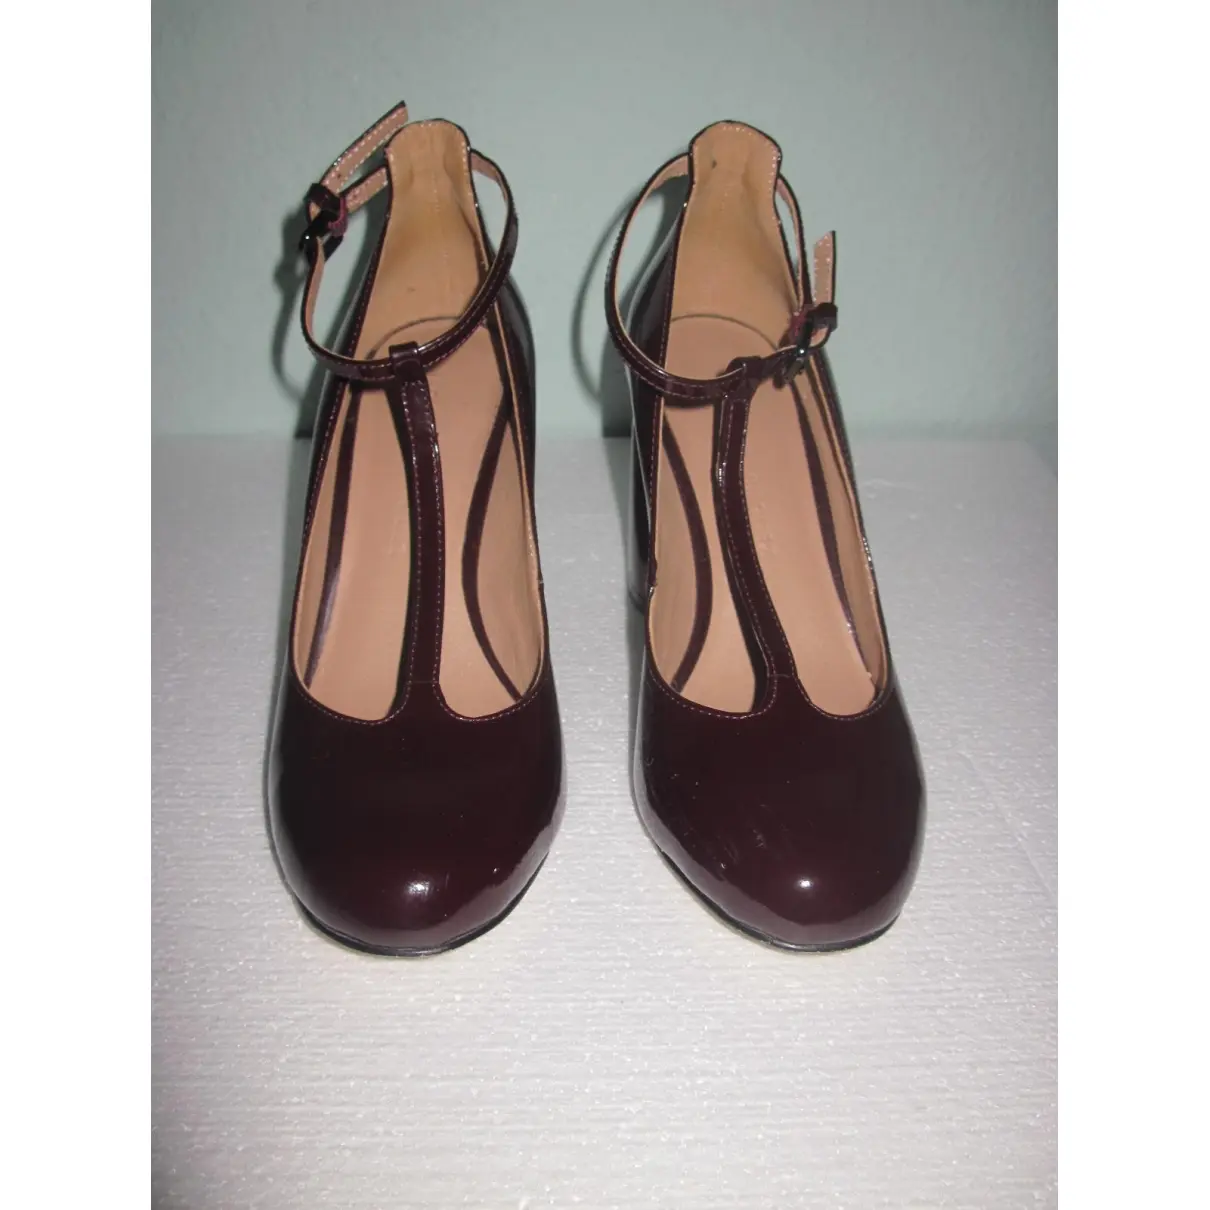 Patent leather heels Adolfo Dominguez